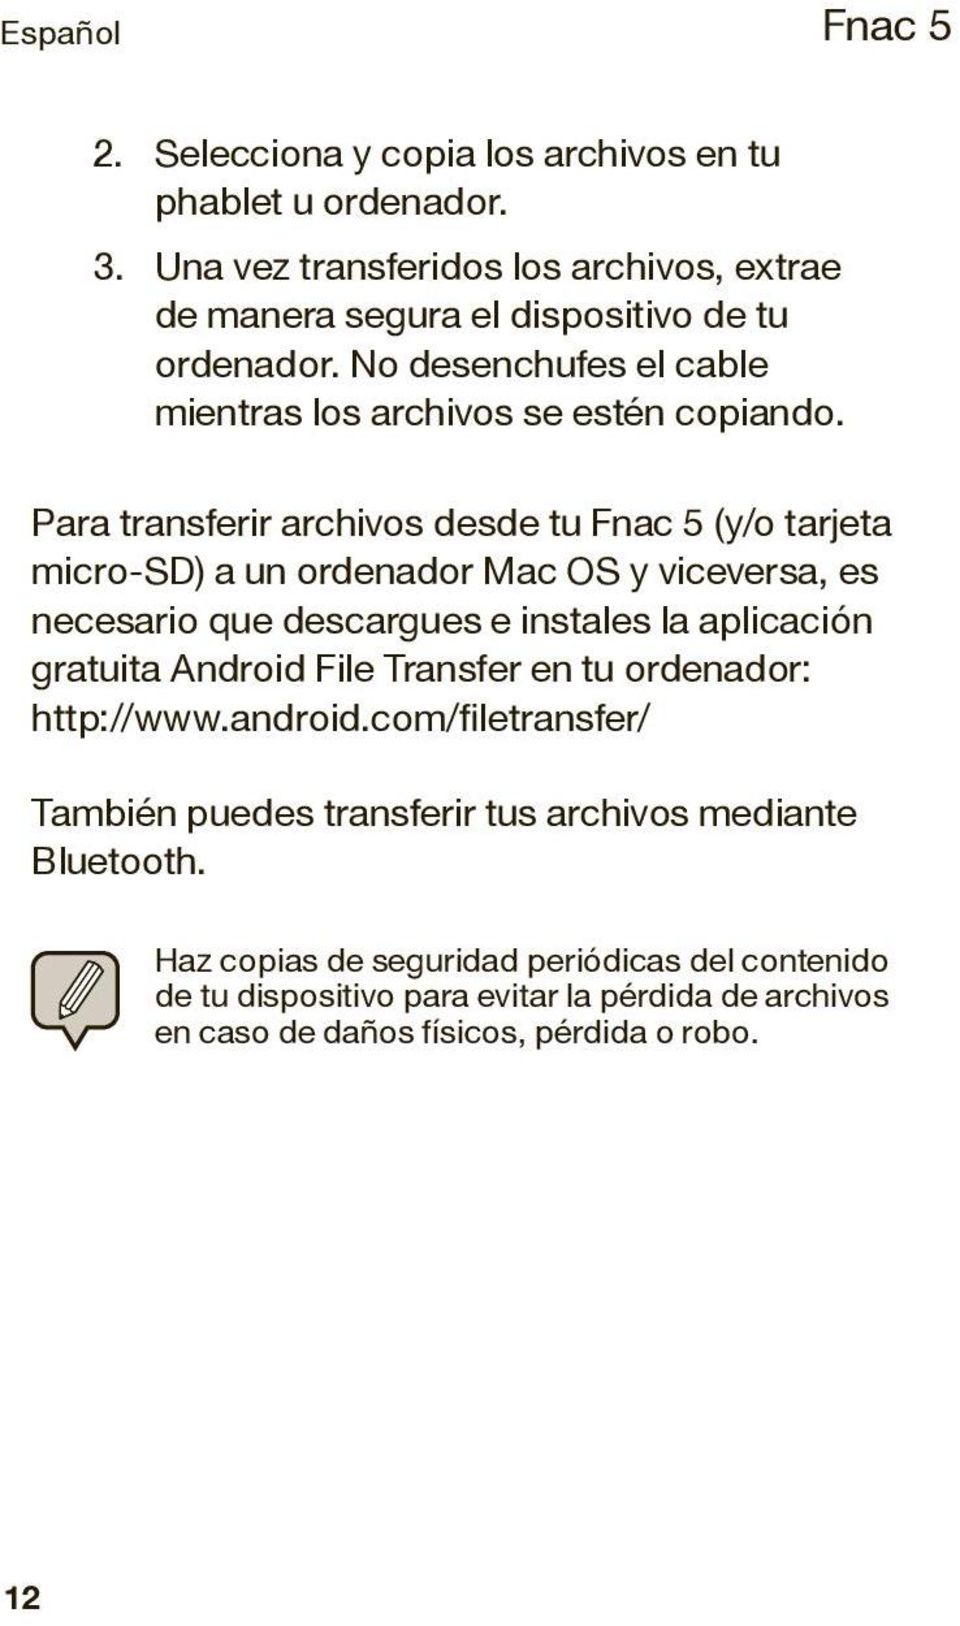 Para transferir archivos desde tu (y/o tarjeta micro-sd) a un ordenador Mac OS y viceversa, es necesario que descargues e instales la aplicación gratuita Android